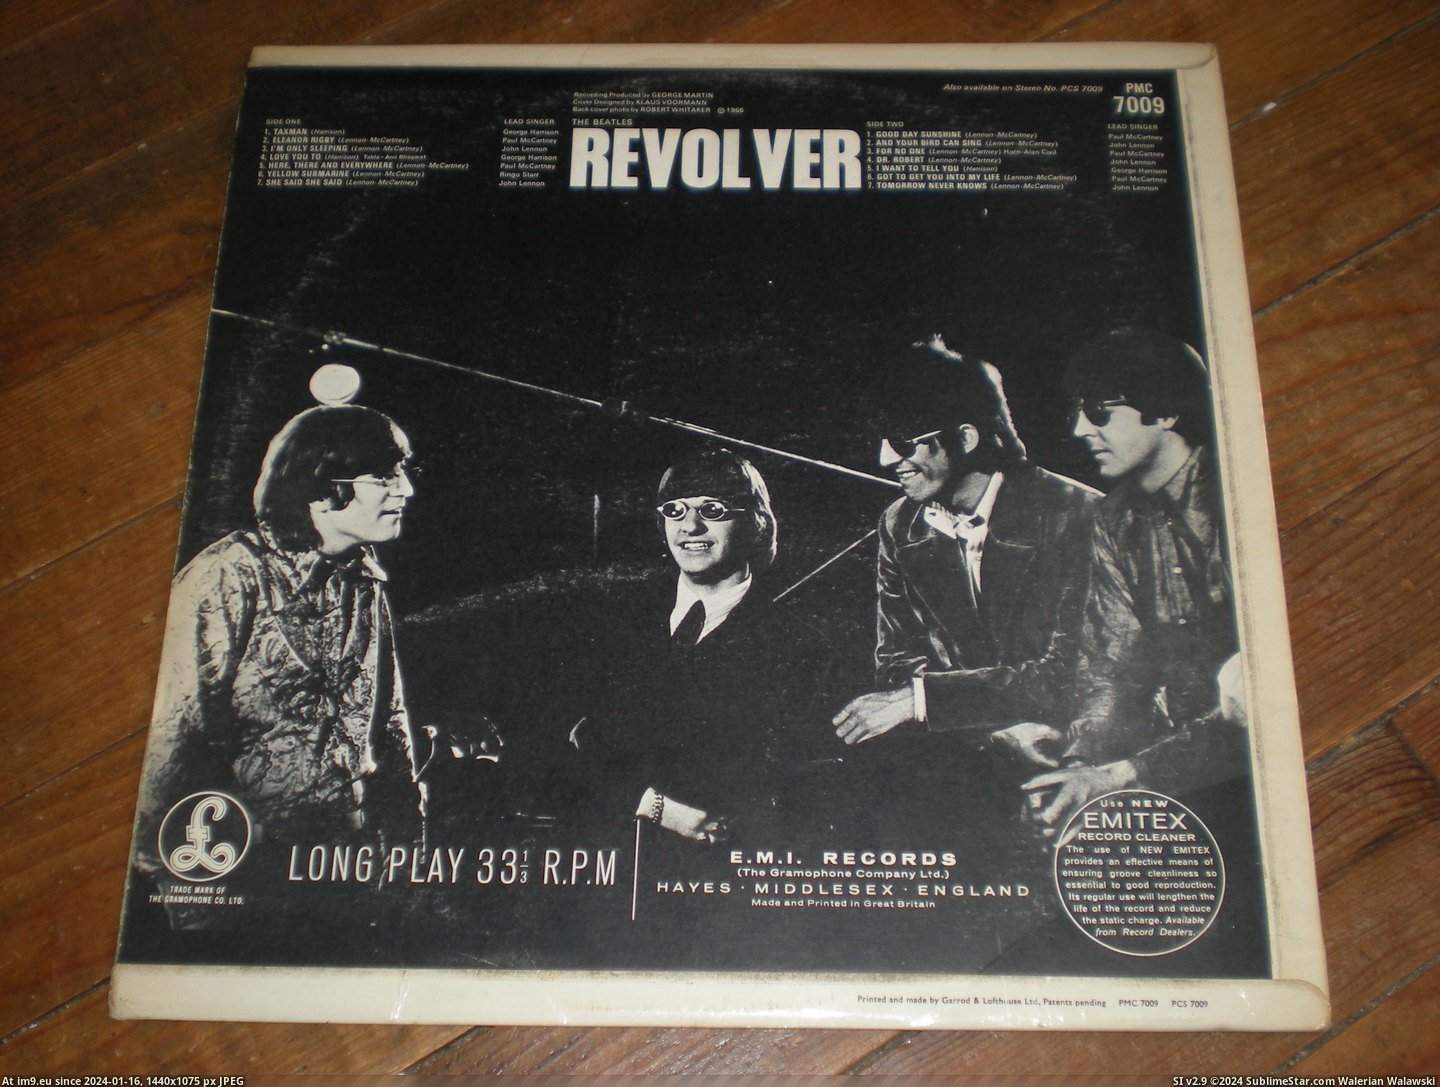  #Revolver  Revolver 15-07-14 3 Pic. (Obraz z album new 1))